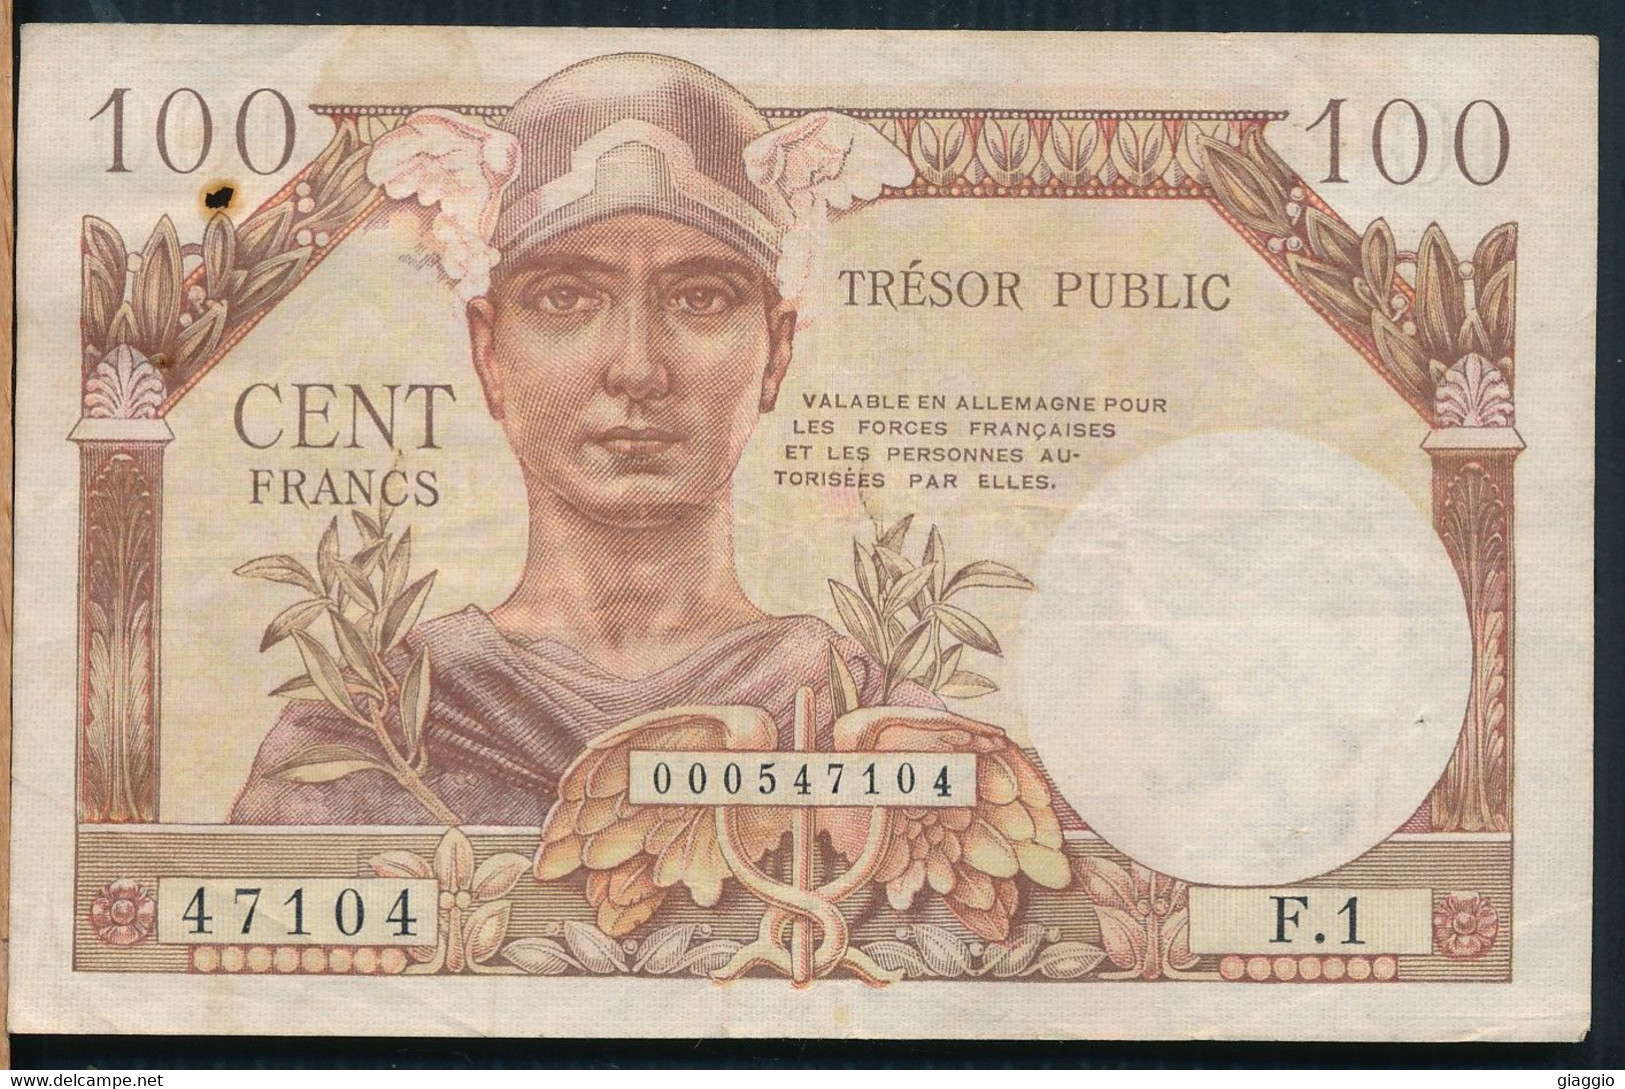 °°° FRANCE - 100 TRESOR PUBLIC °°° - 1955-1963 Treasury